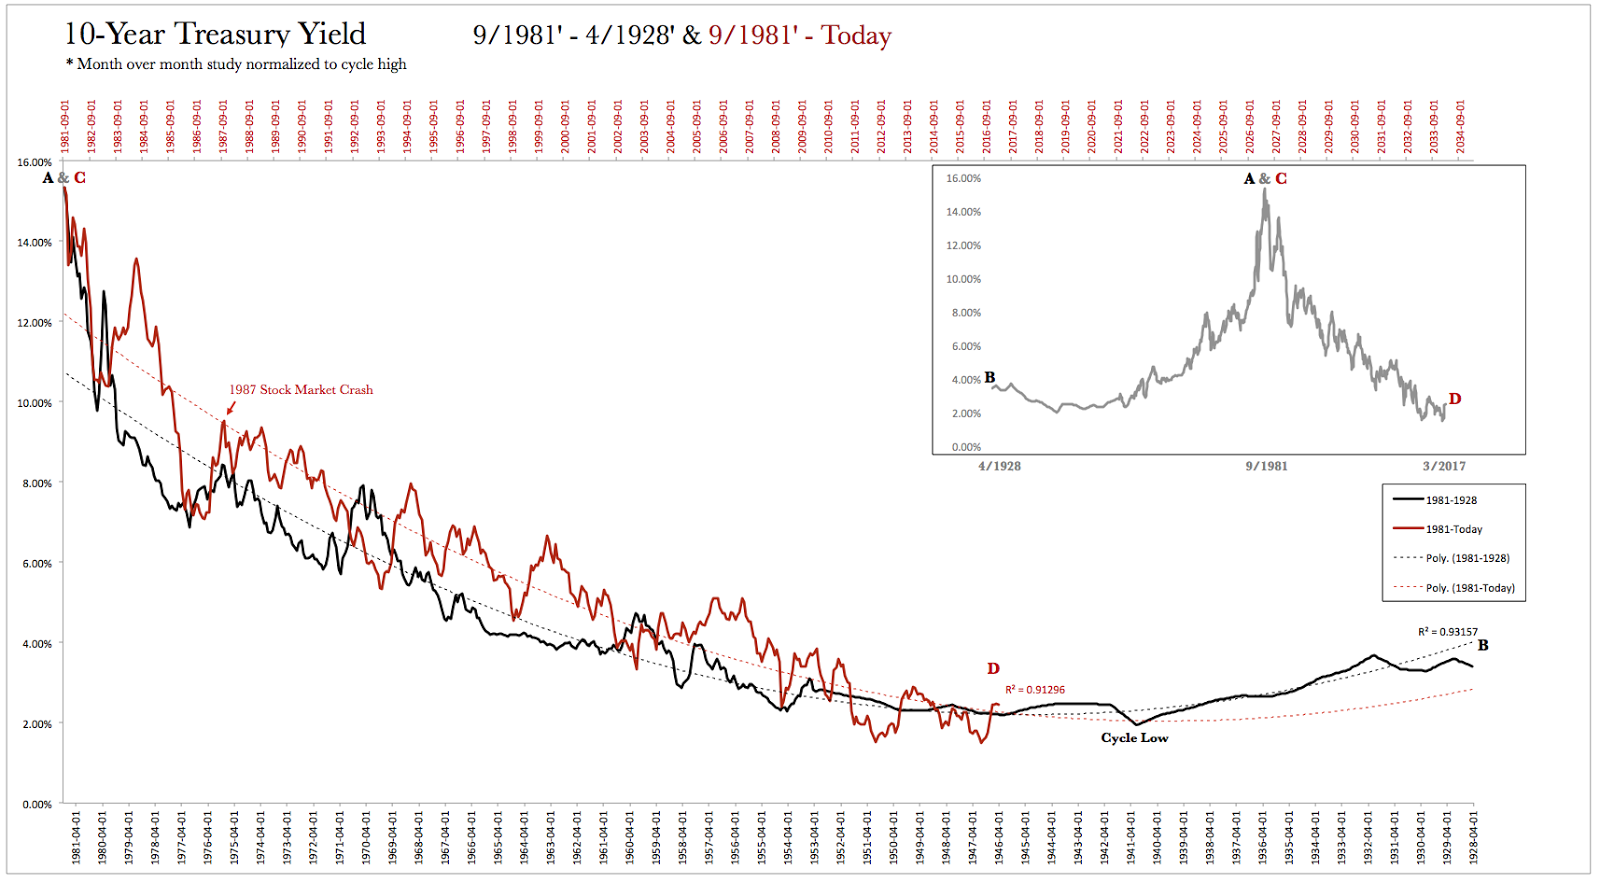 10-Year Treasury Yield 9/1981-4/1923 vs 9/1981-Today